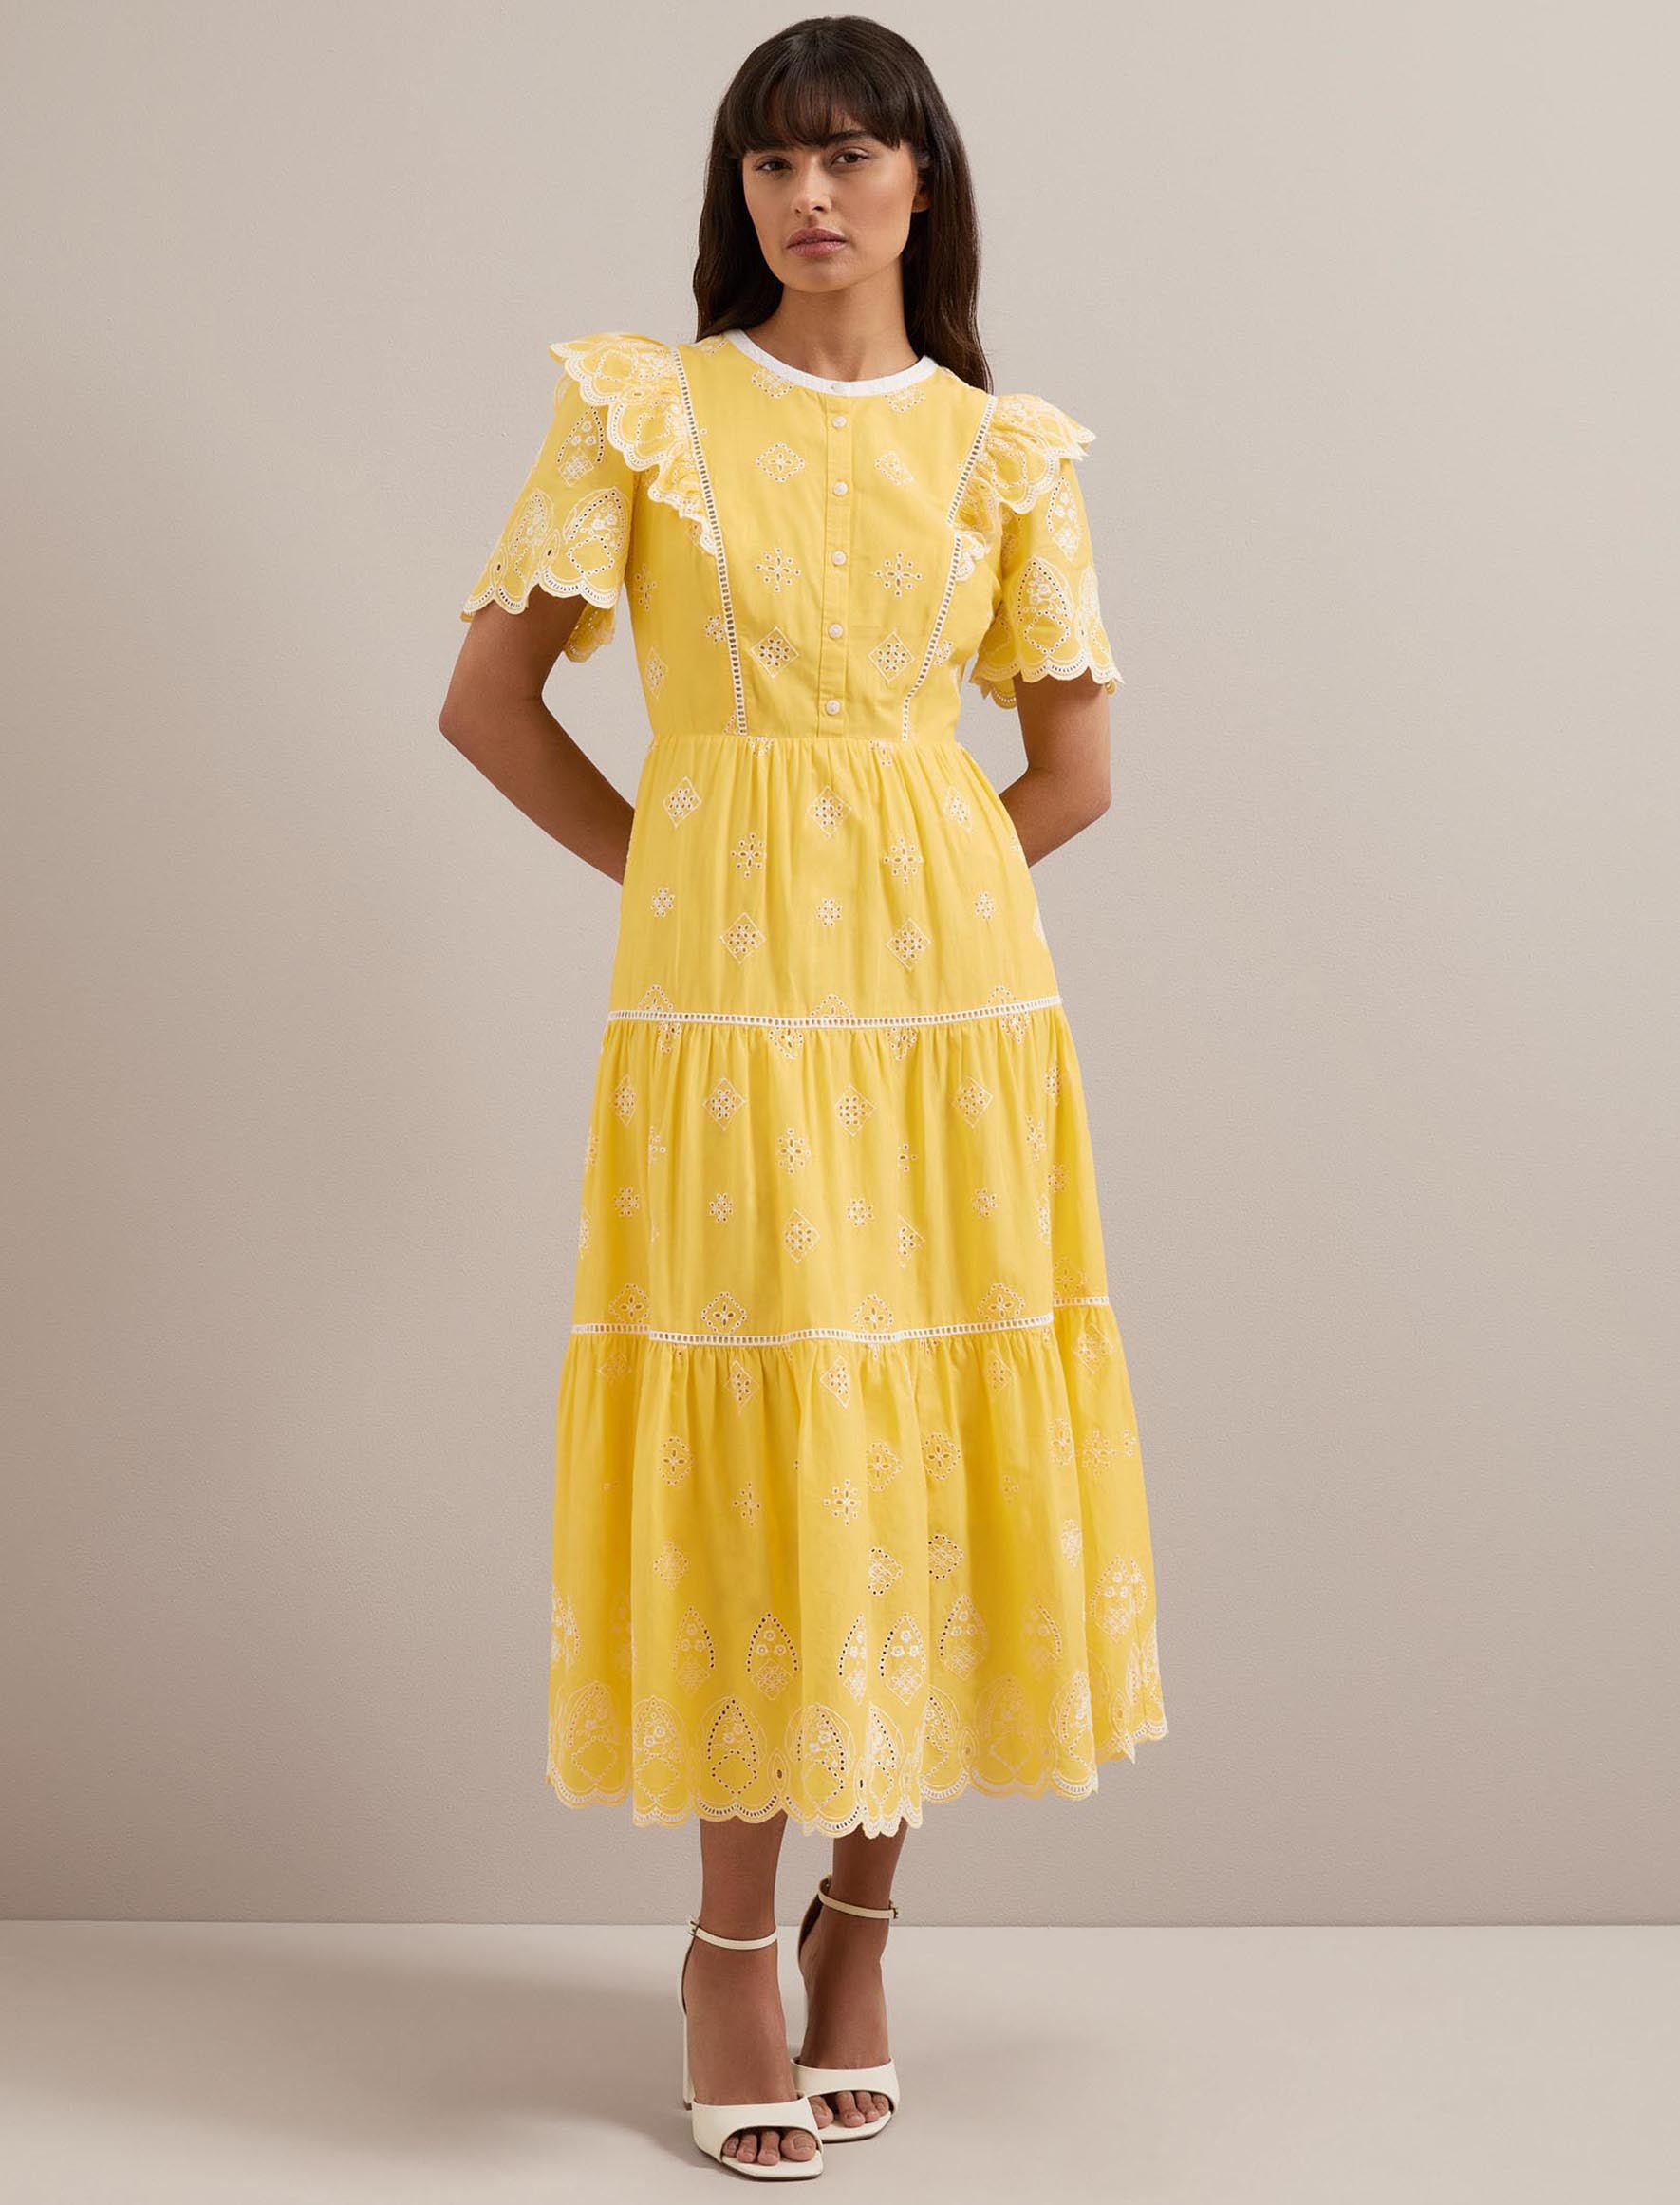 Cefinn Alana Organic Cotton Maxi Dress - Yellow White